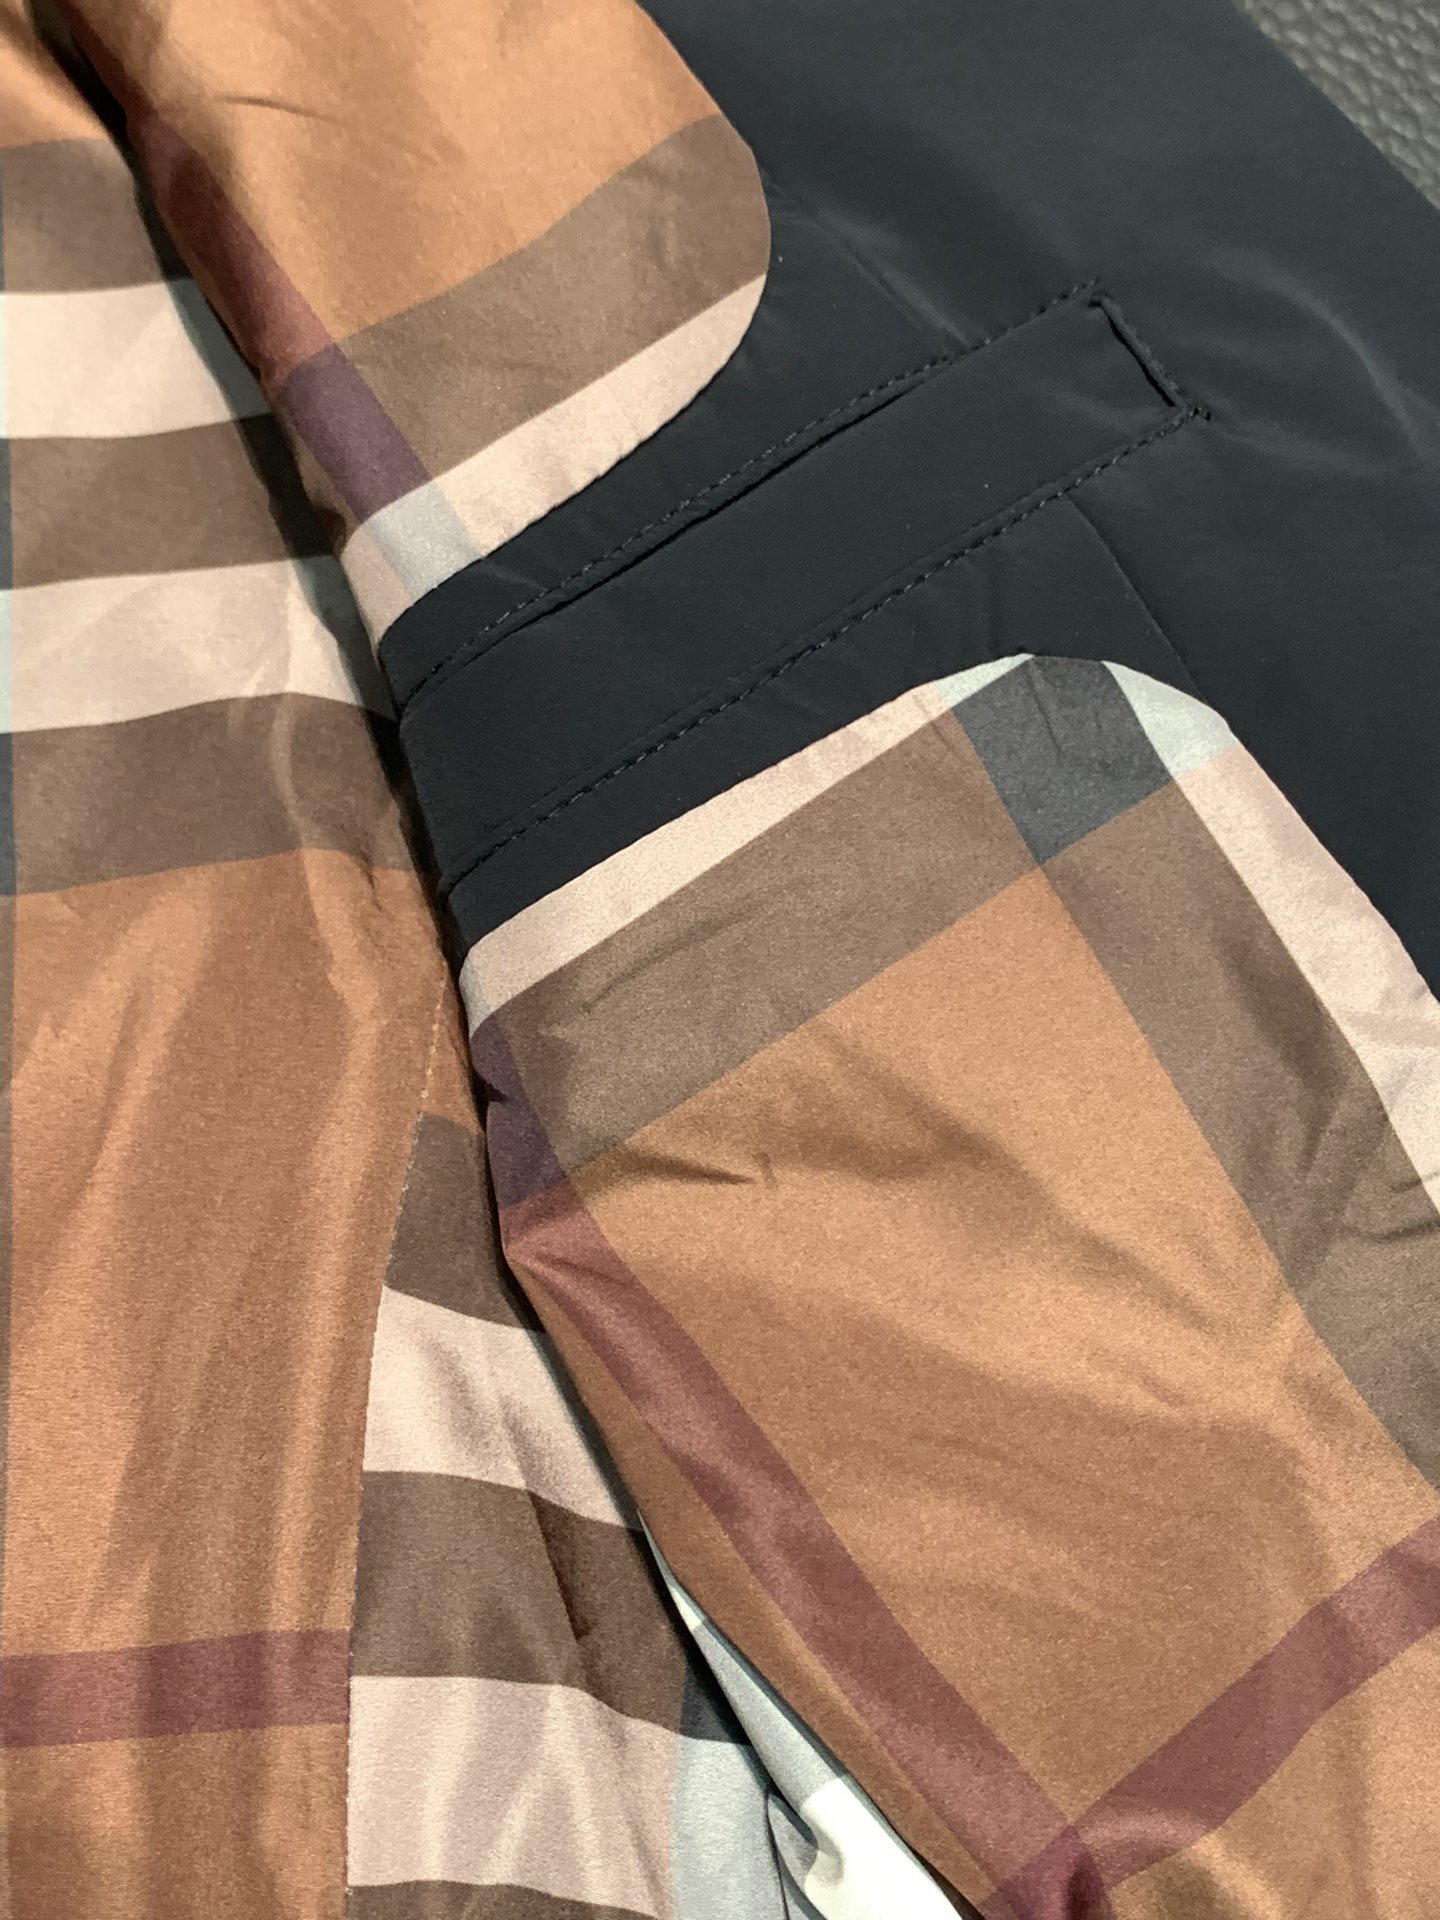 BBR巴宝莉独家专供最新秋冬时尚休闲西服外套经典设计感与颜值爆棚的外套品质更是无法挑剔品控可以直接入手不